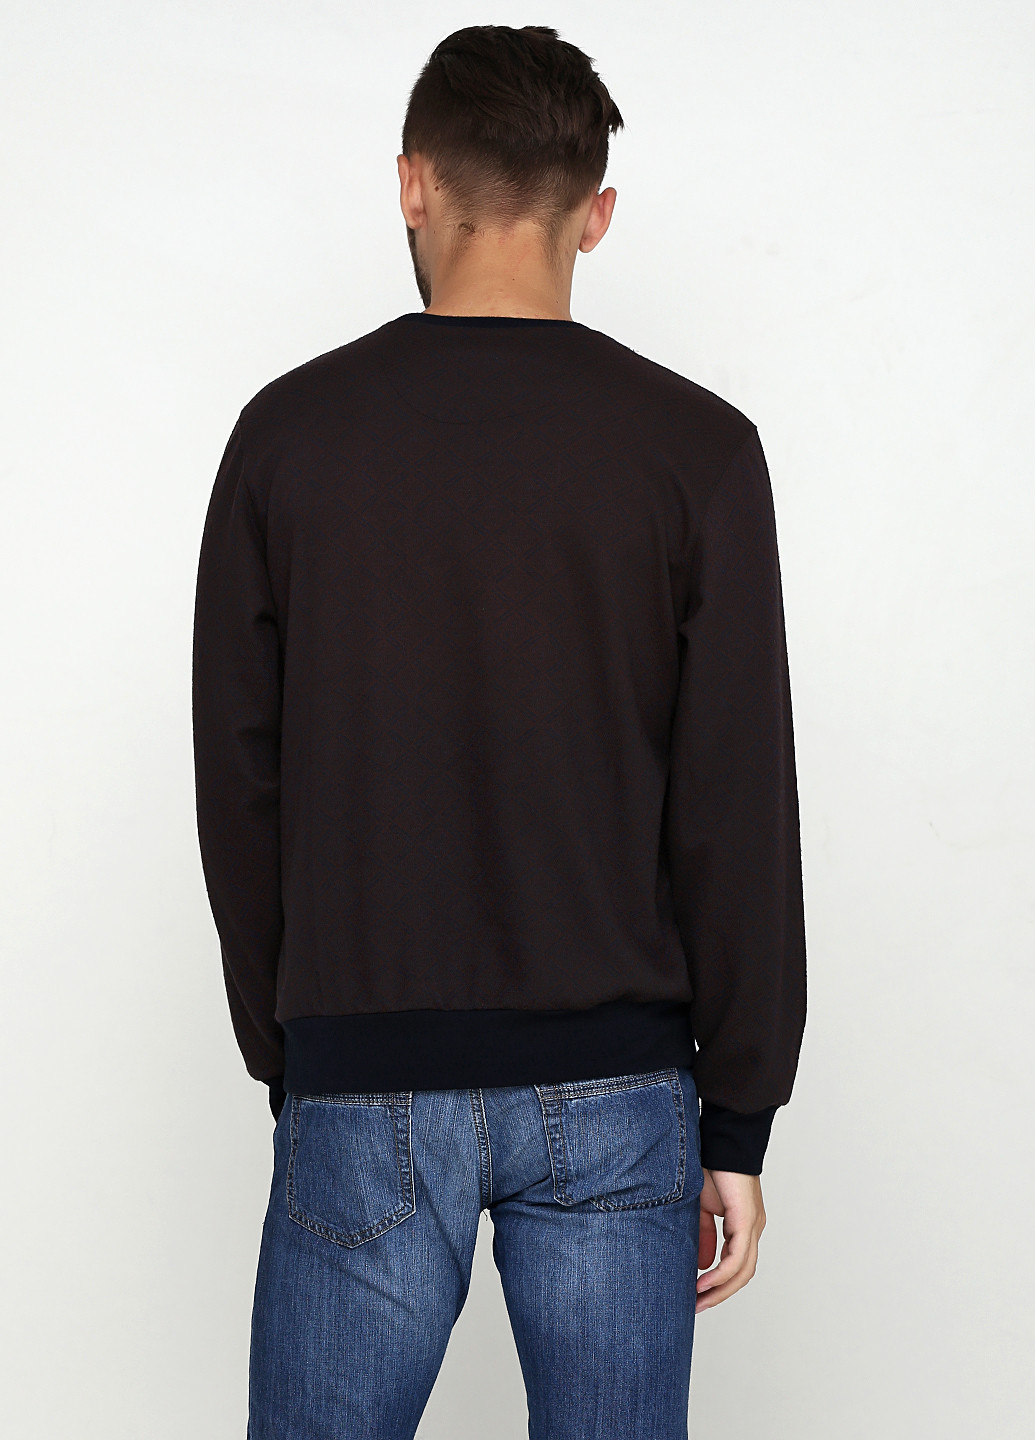 Темно-коричневый демисезонный пуловер пуловер MSY